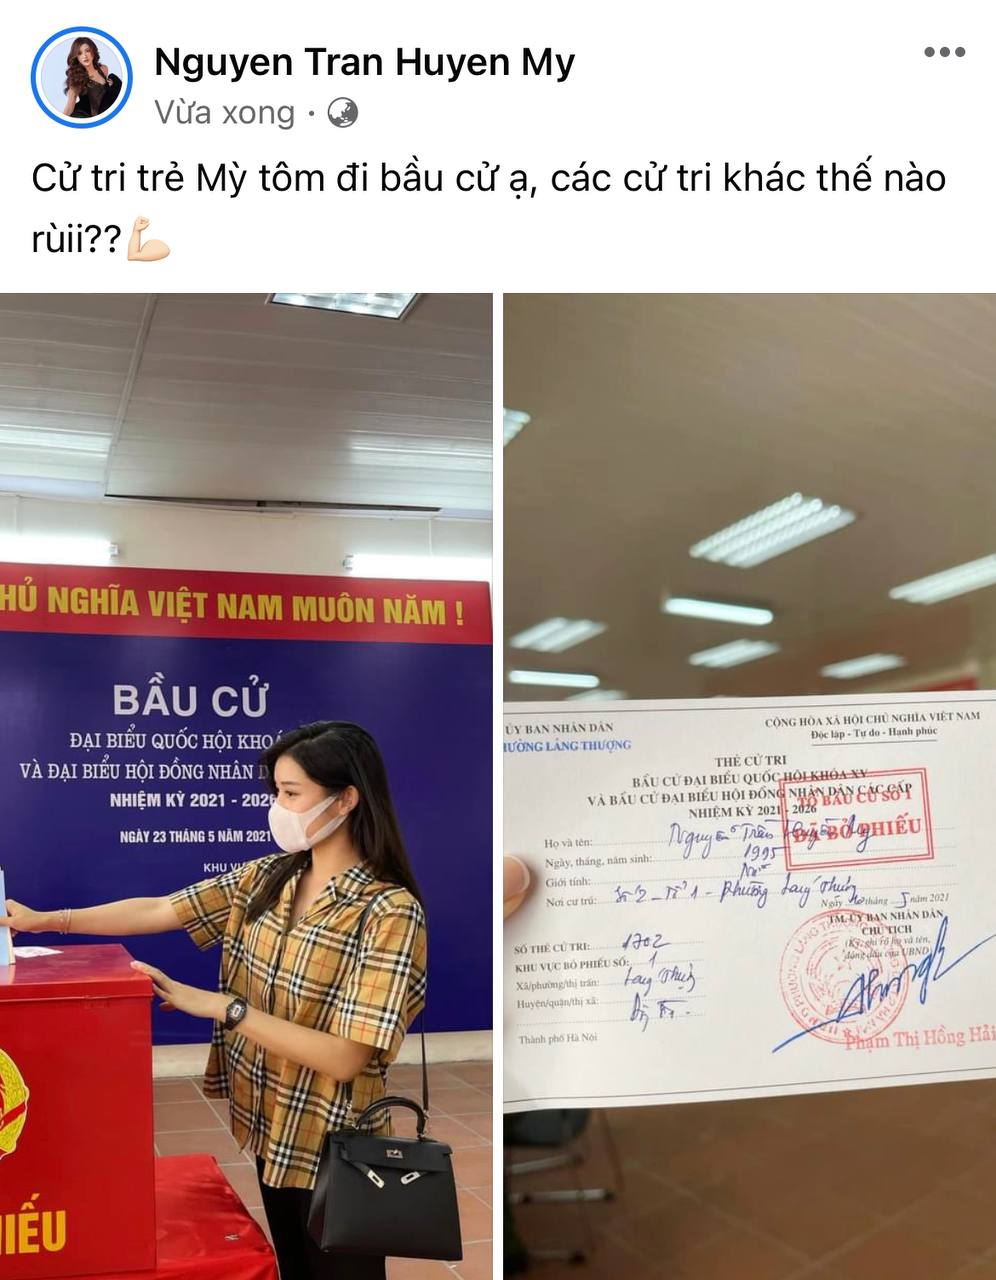 Sao Việt nô nức đi bầu cử: Tiểu Vy, Huyền My dậy sớm làm thanh niên gương mẫu, Khánh Vân từ Mỹ cũng hào hứng hưởng ứng - Ảnh 7.